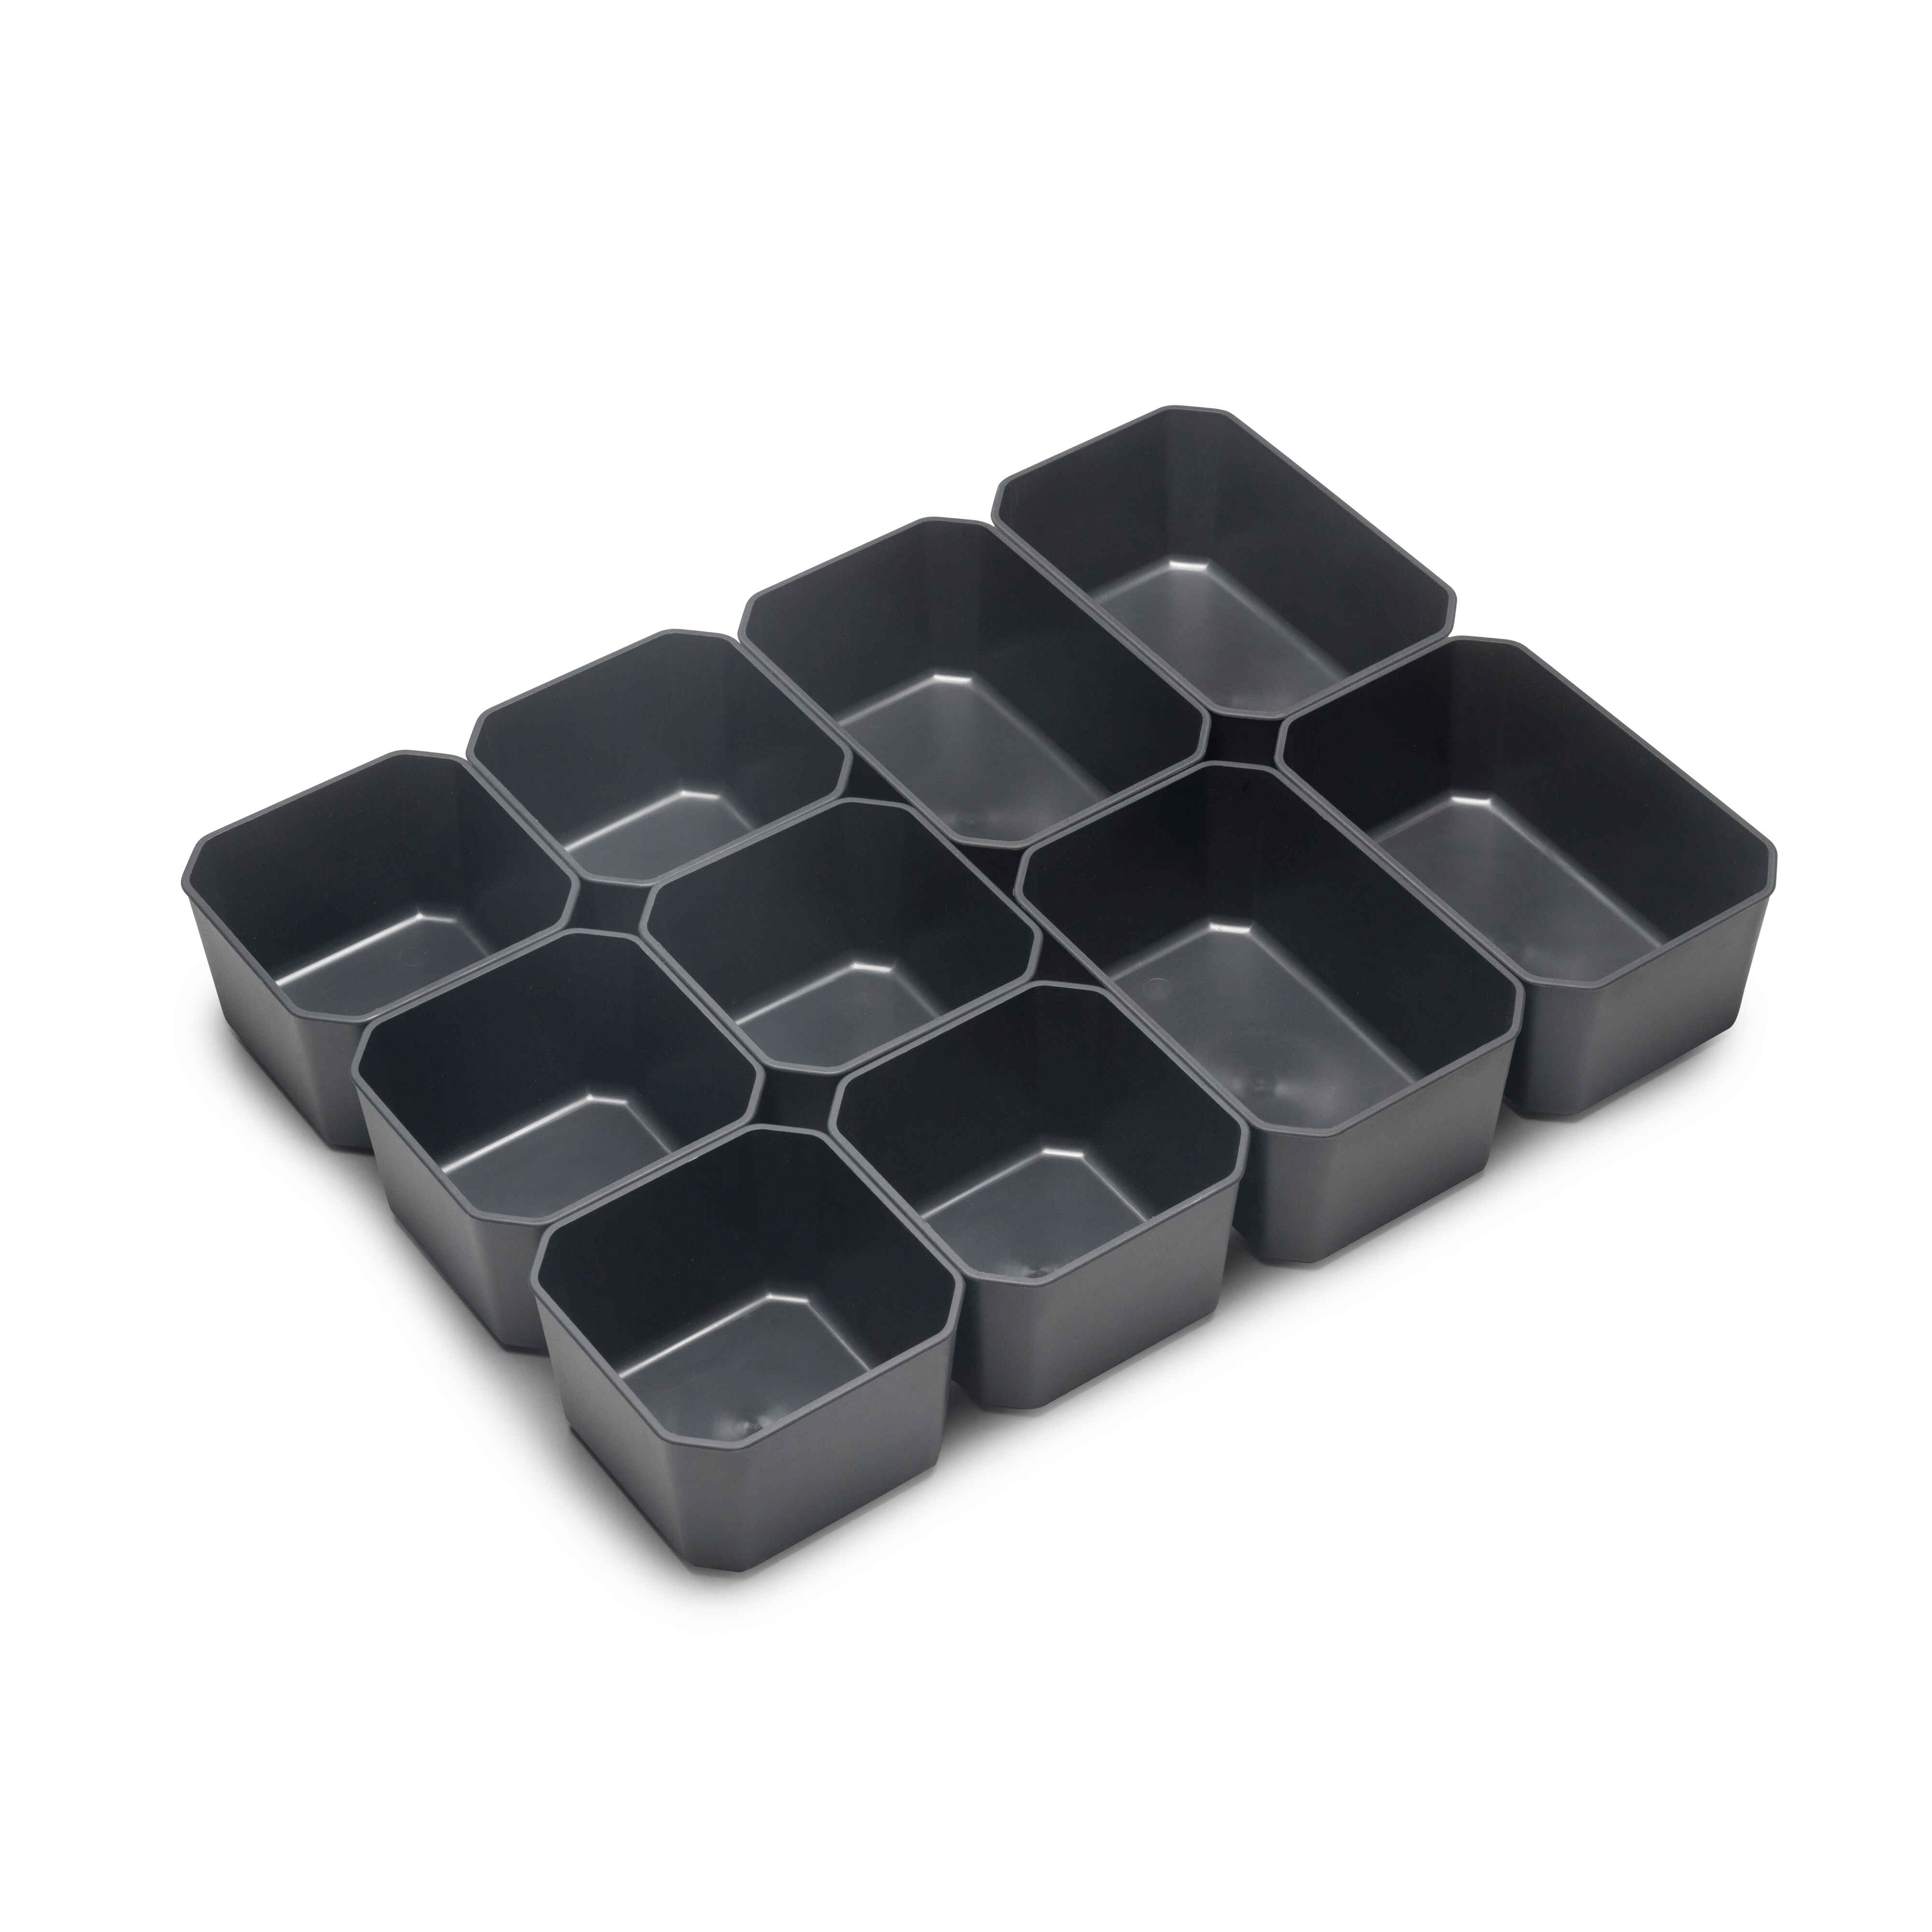 Cubos para organizadores de cajón de baño Tidy, Plástico gris antracita, Plástico, 10 cubes